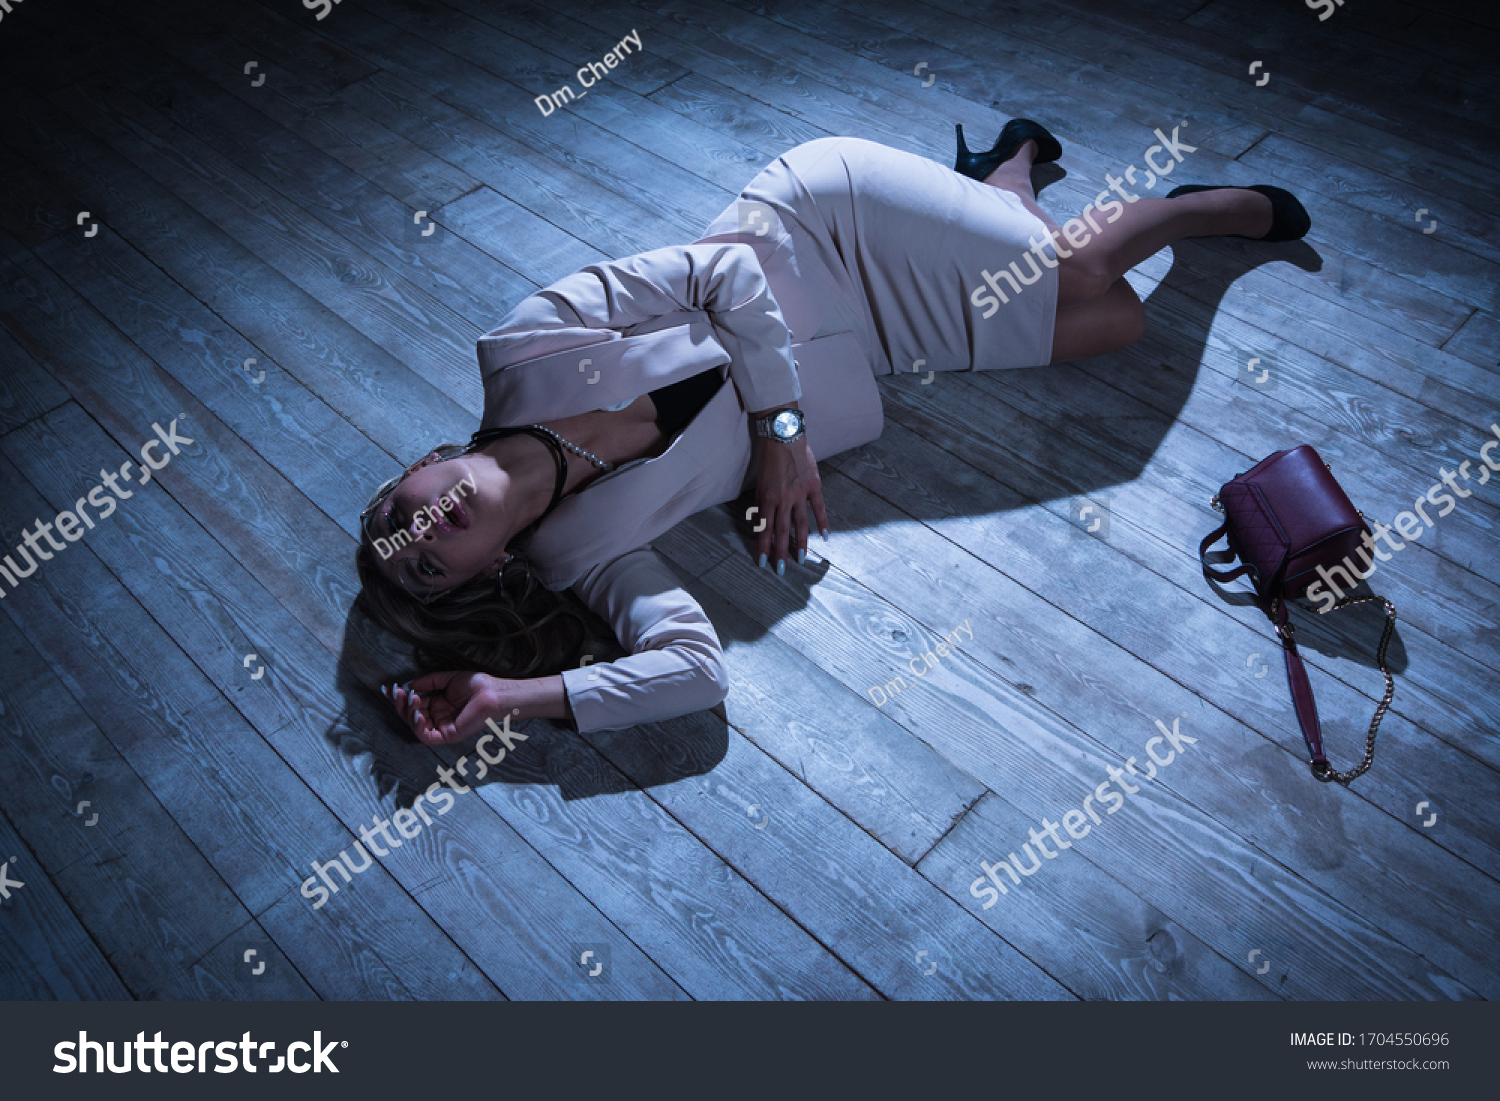 Crime Scene Strangled Pretty Business Woman Foto Stok 1704550696 Shutterstock 2884